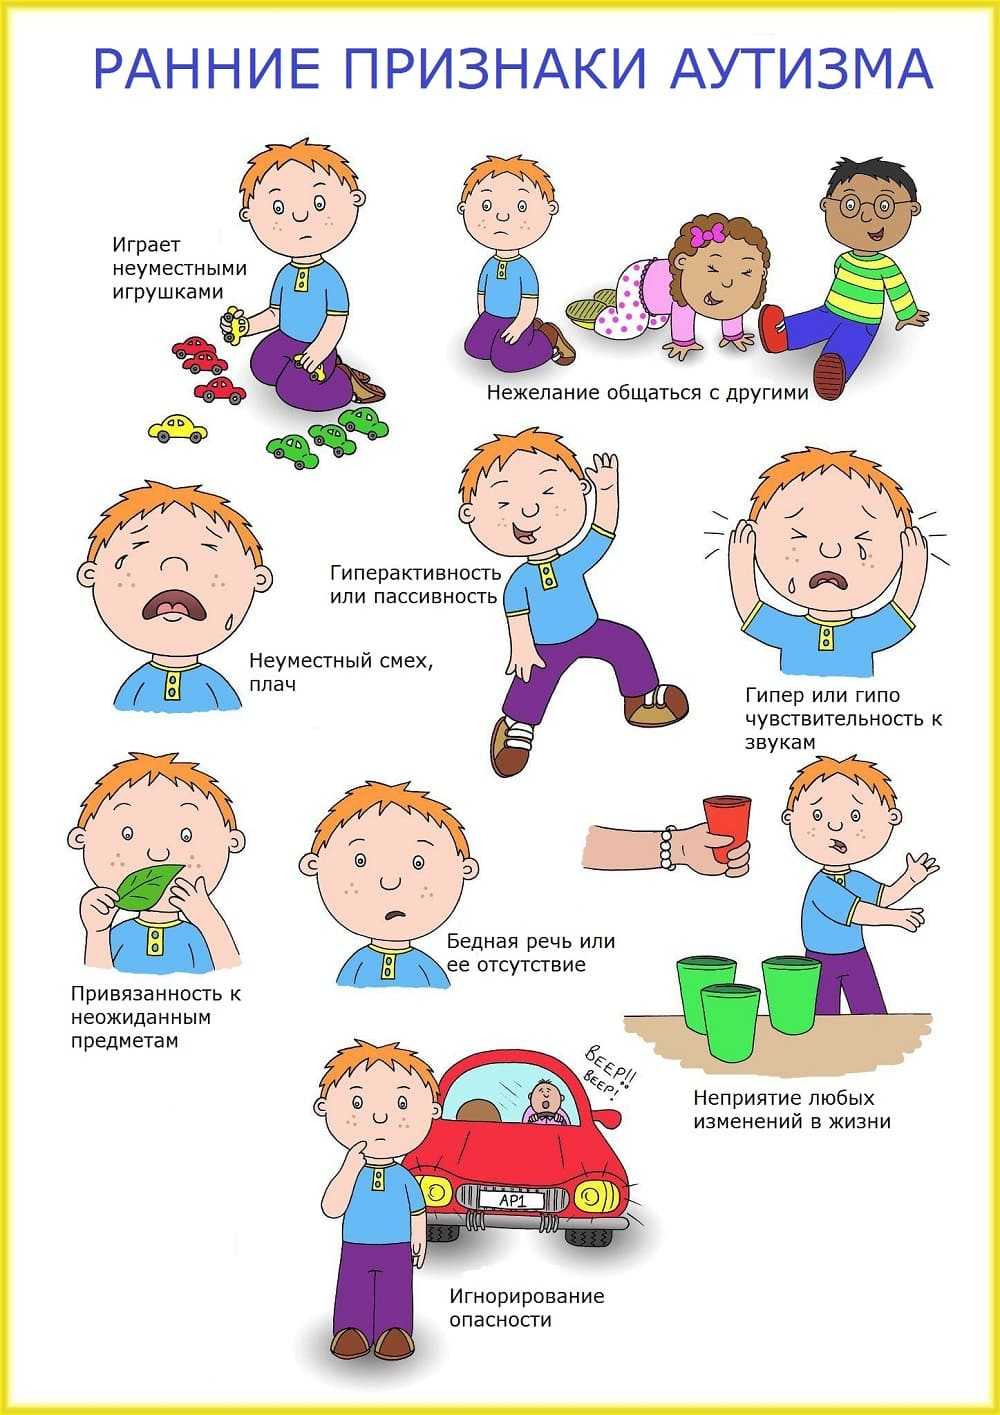 Детский аутизм: что это, причины развития болезни, симптомы и диагностика, методы лечения аутизма.